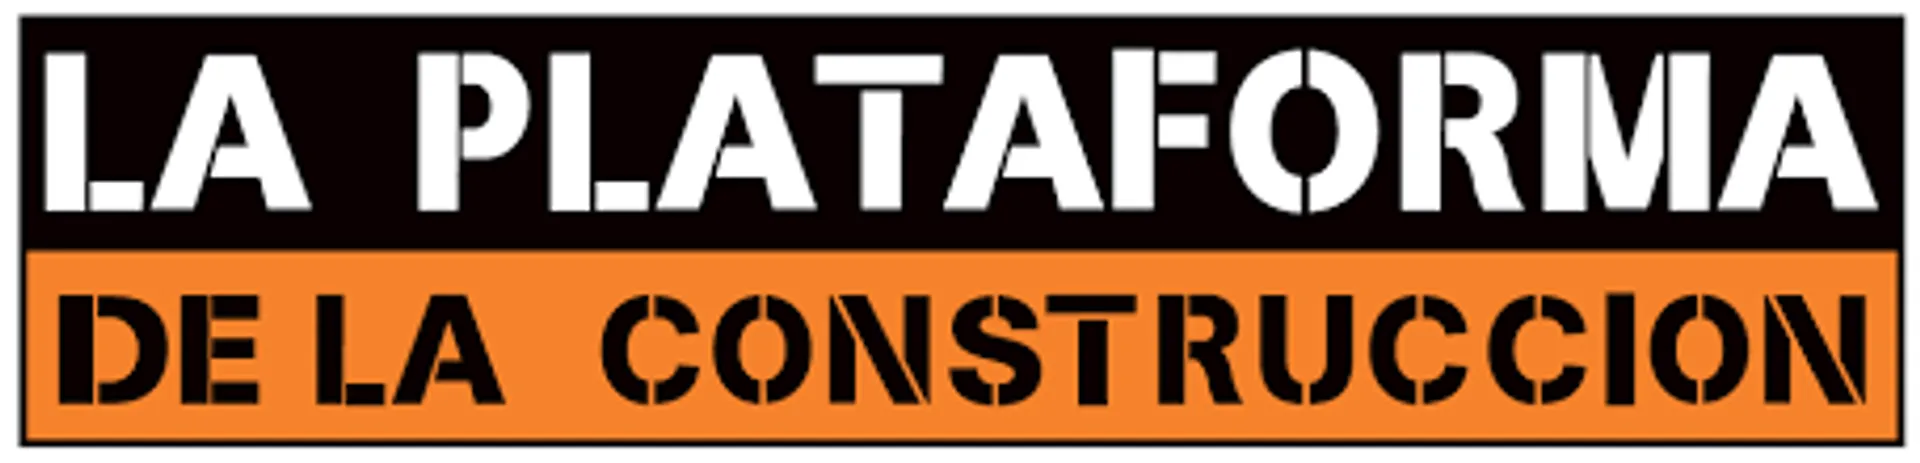 LA PLATAFORMA DE LA CONSTRUCCIÓN logo de catálogo